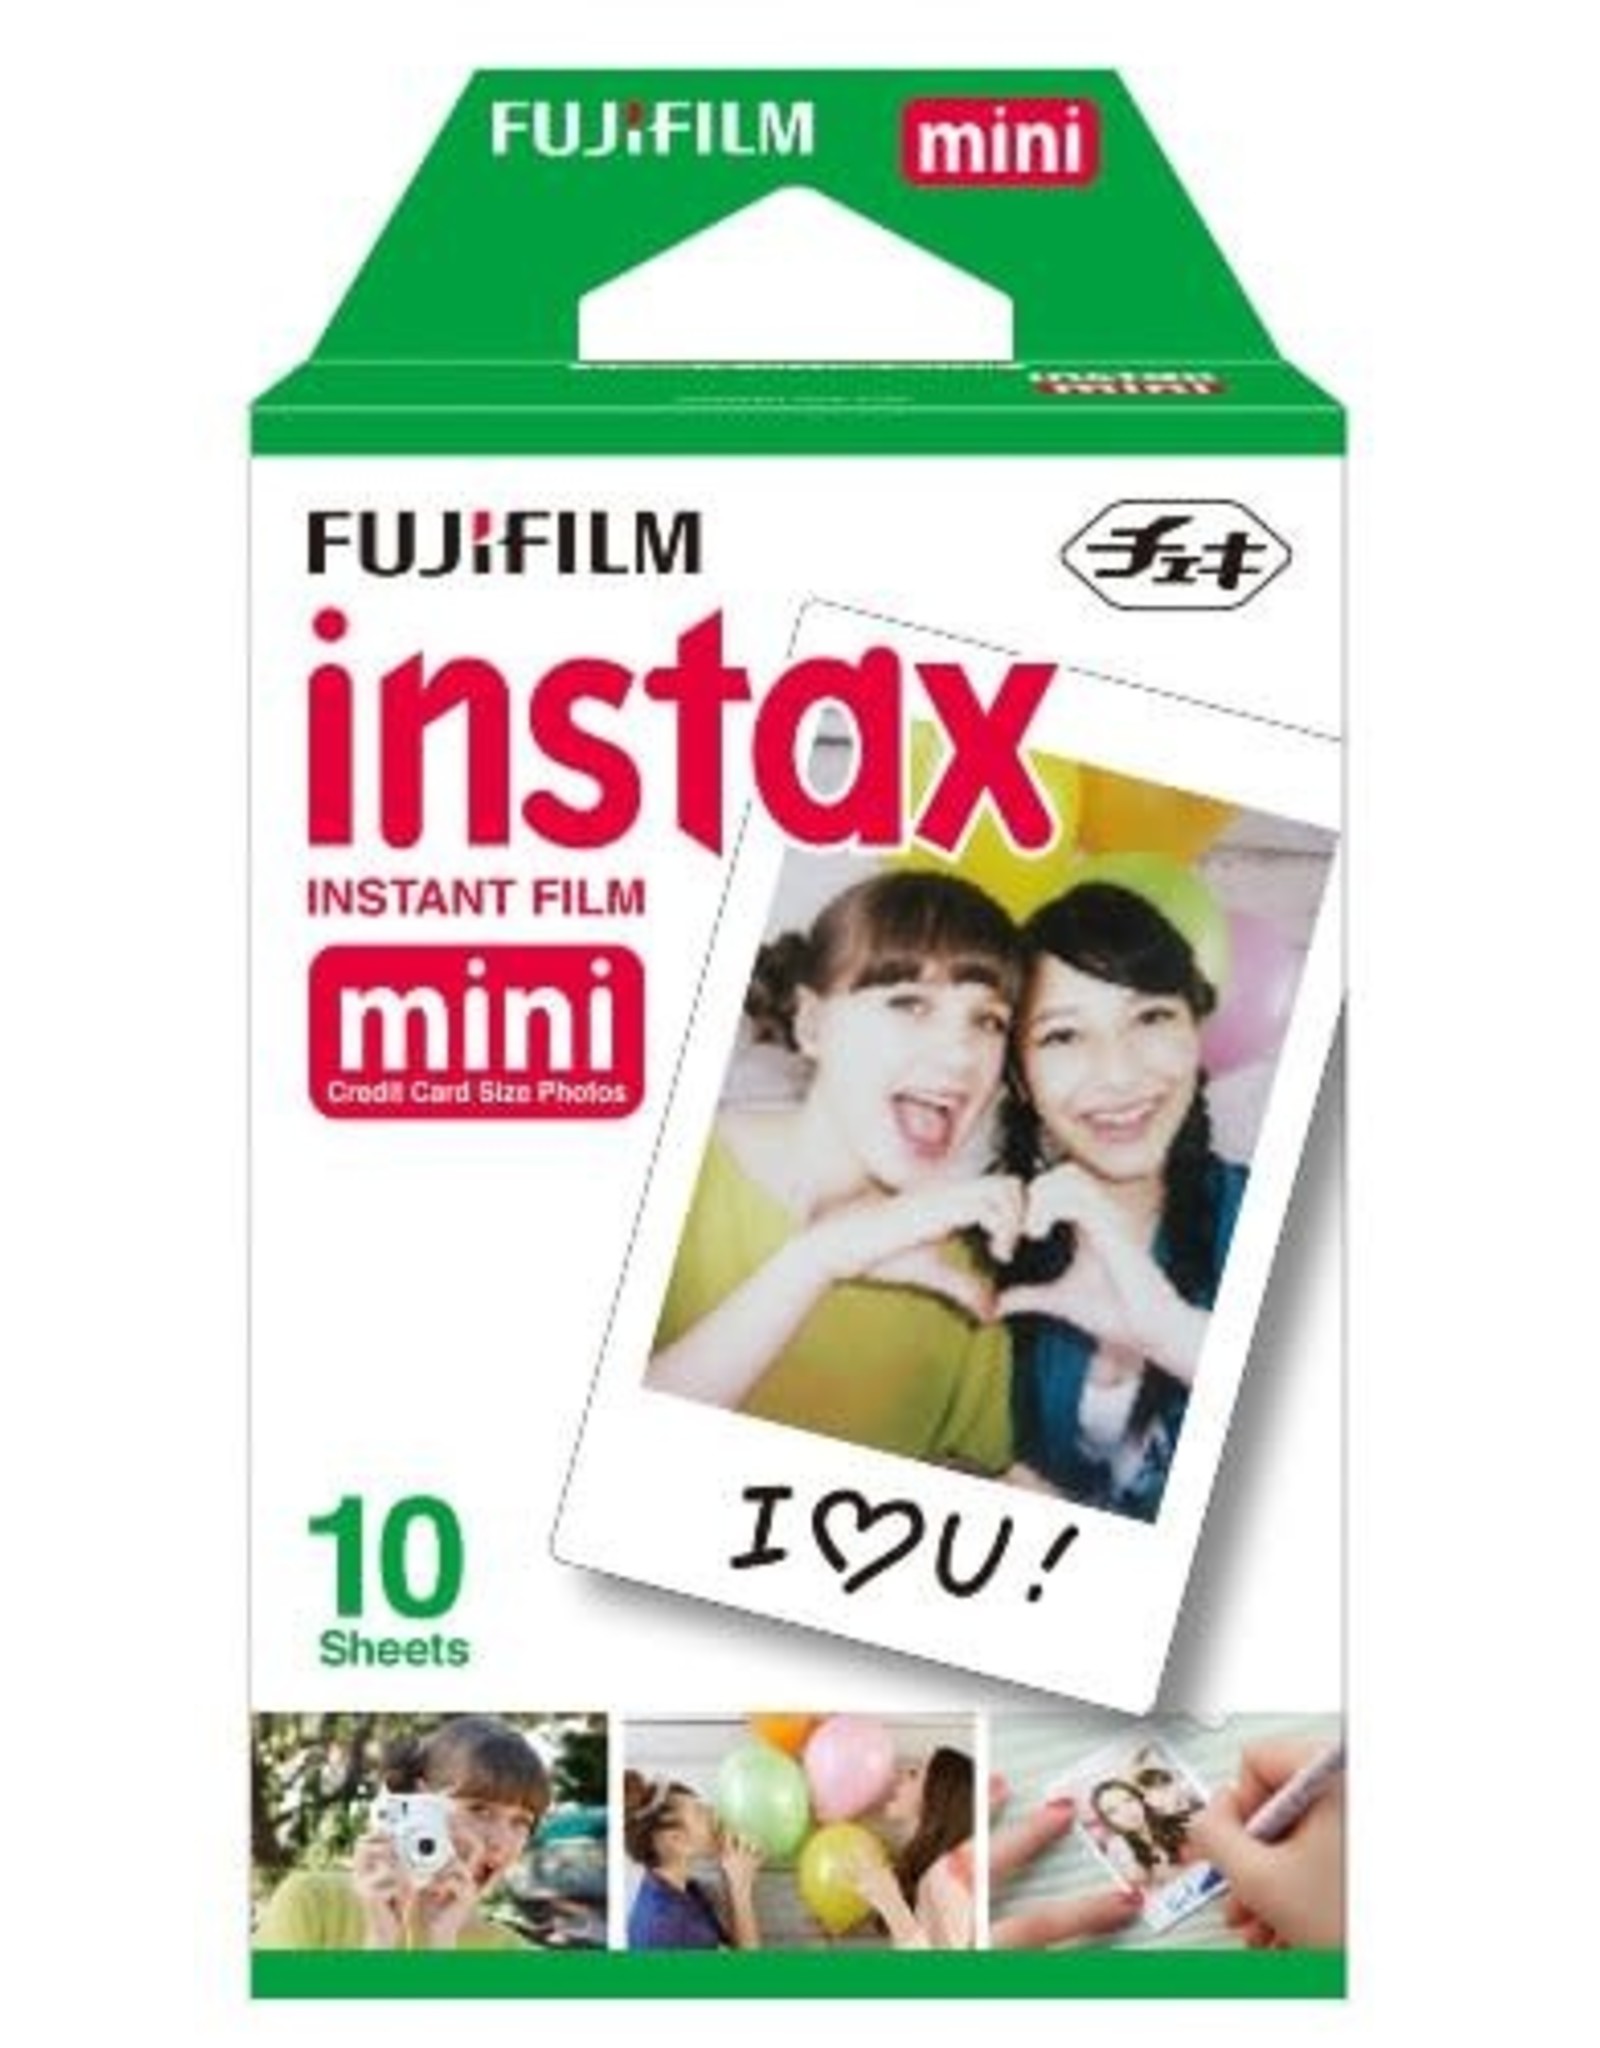 Fujifilm Instax Mini Instant Film, 10 Prints x2 (Twin Pack)